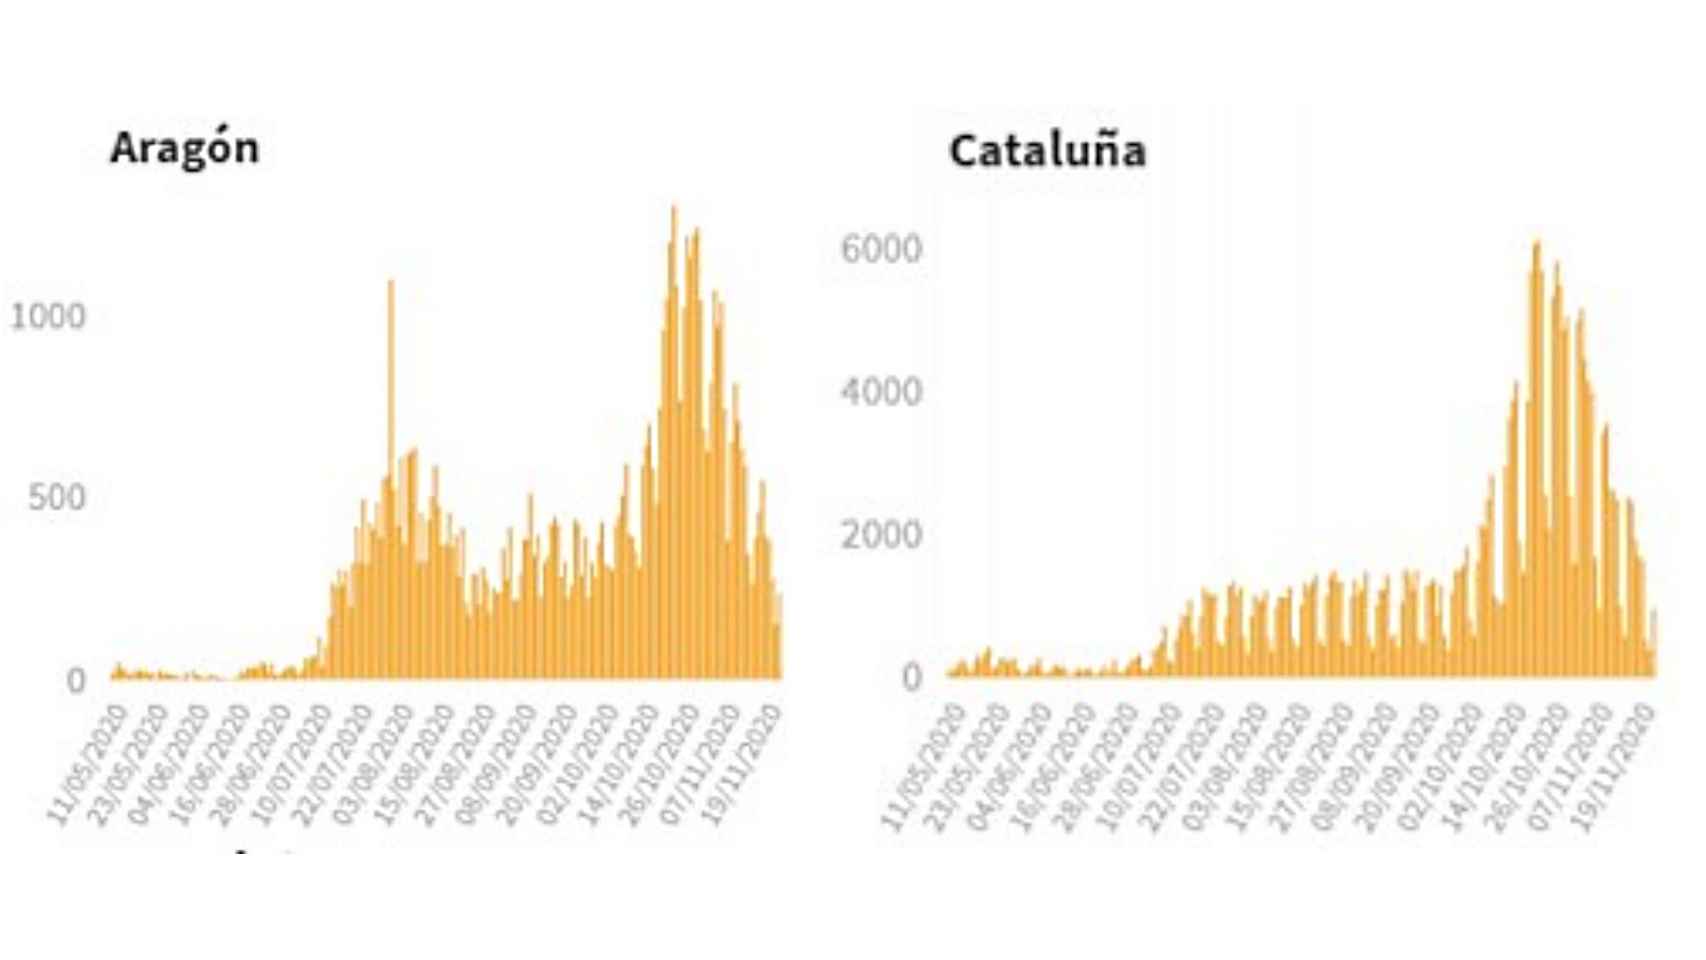 Comparativa de casos en Aragón y Cataluña.